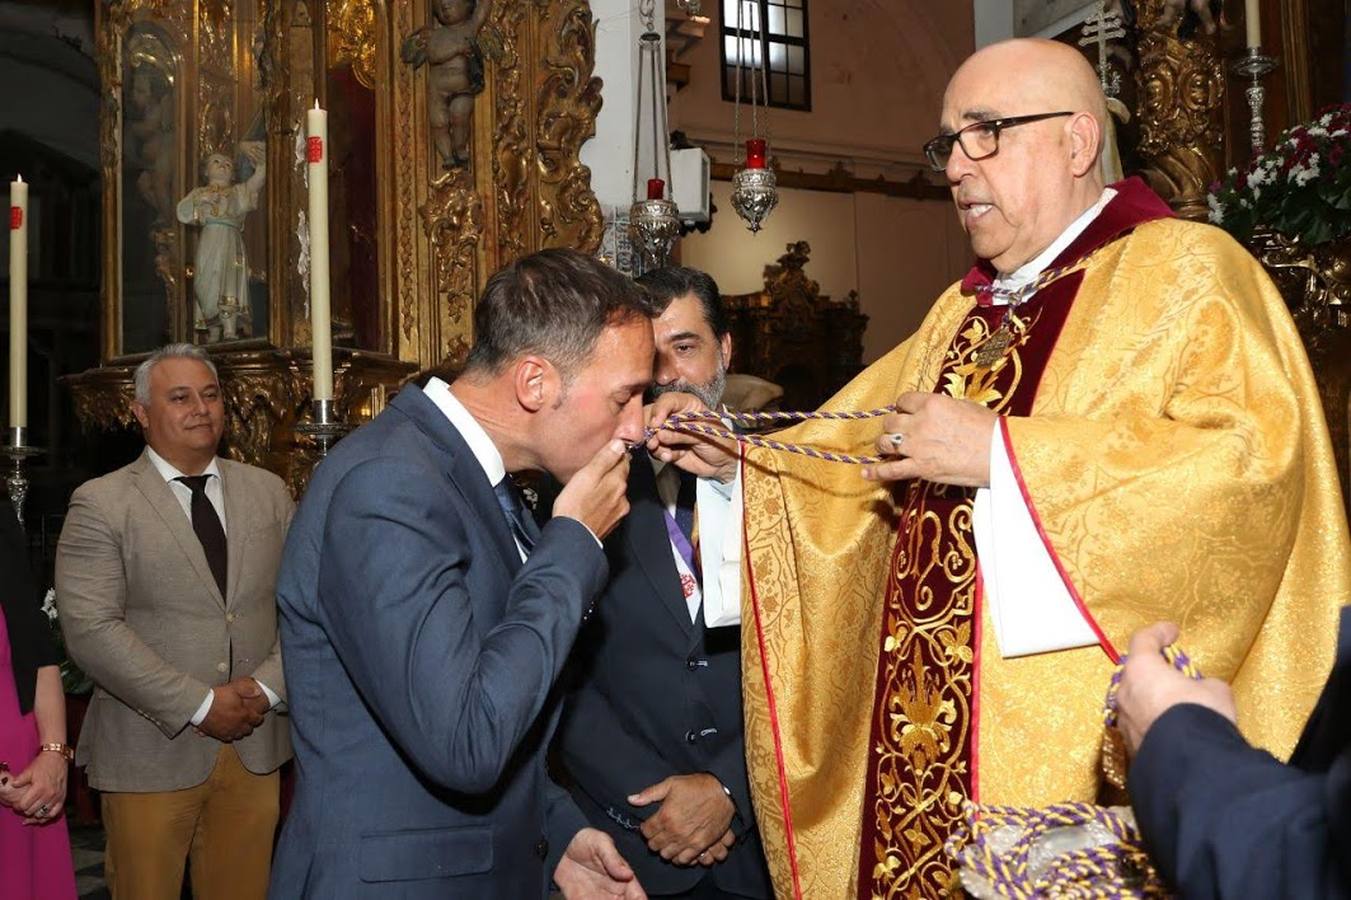 Fotos: El Nazareno impone las medallas de hermanos natos a los nuevos miembros de la corporación municipal de Cádiz